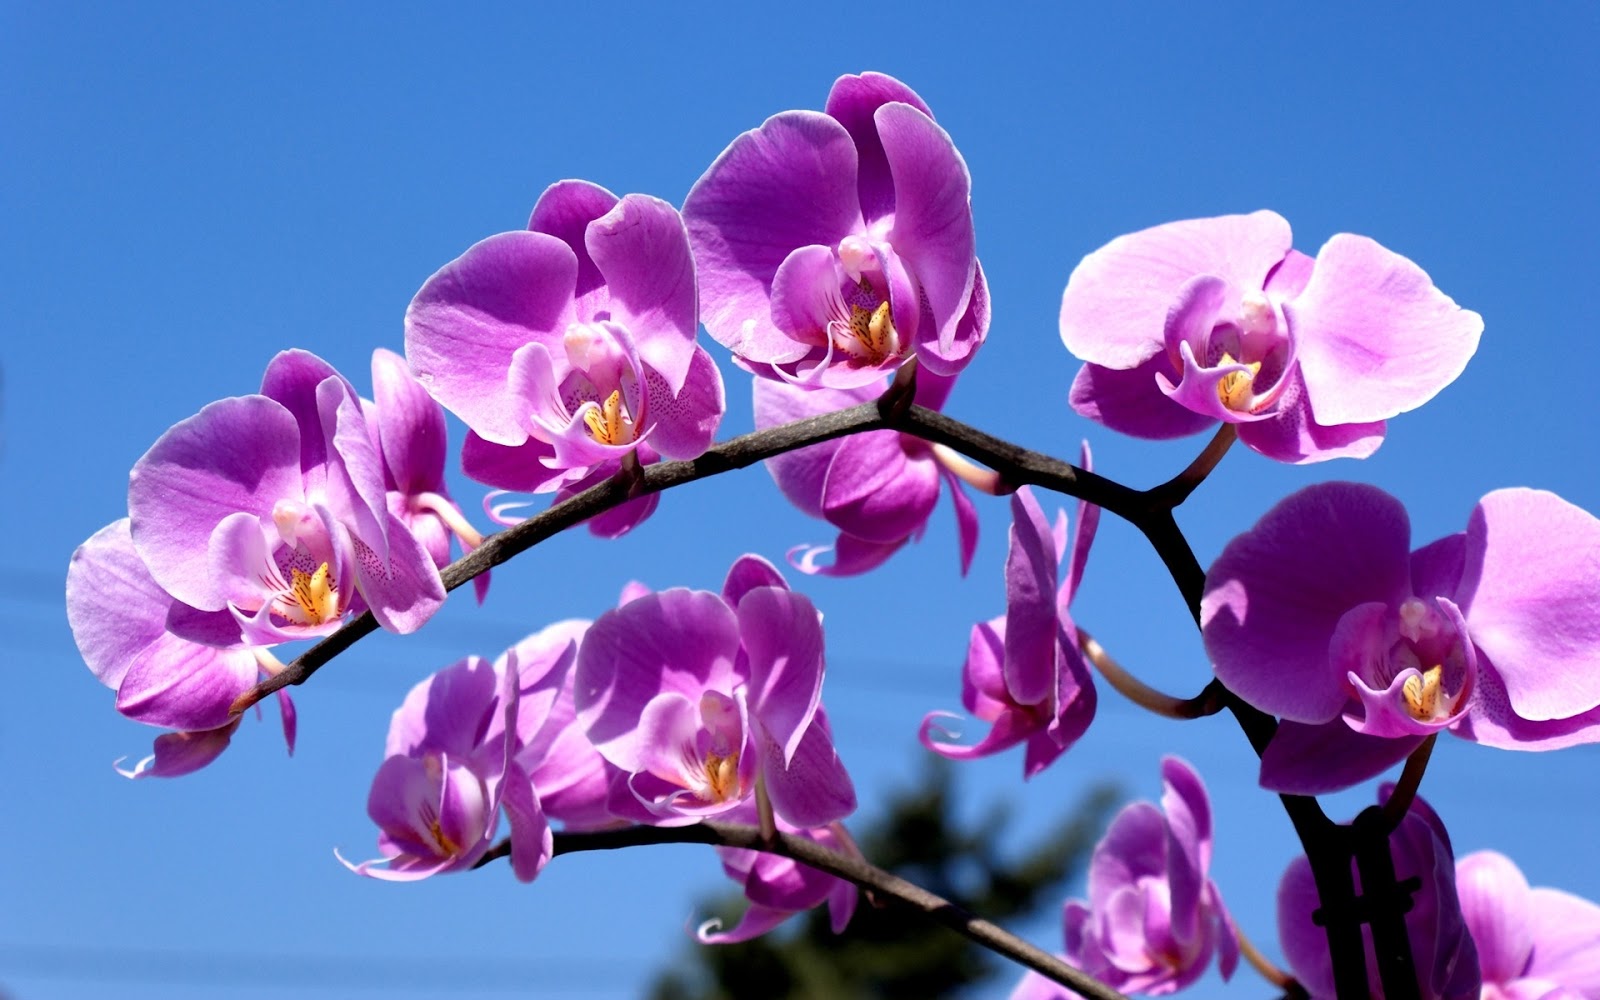 Với những màu sắc tím trầm nổi bật trên nền trắng tinh khôi, hình nền hoa phong lan màu tím đẹp khiến ai nhìn vào đều phải trầm trồ. Đó là sự hòa quyện harmonious giữa thế giới hoa và trí tưởng tượng của người xem.